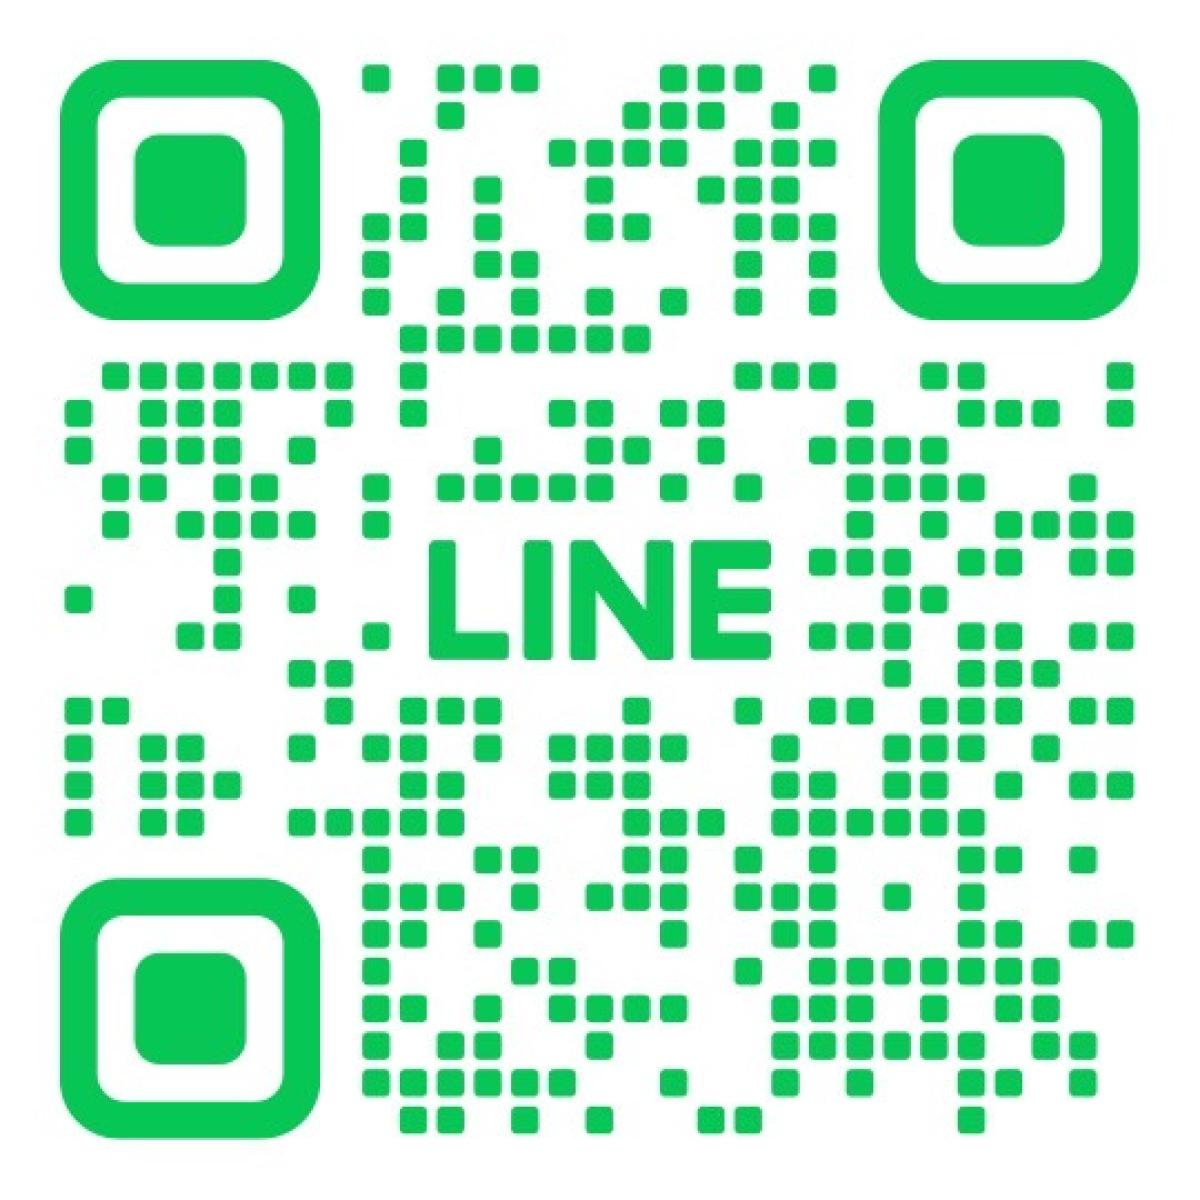 モリエコ公式LINEのQRコードの画像